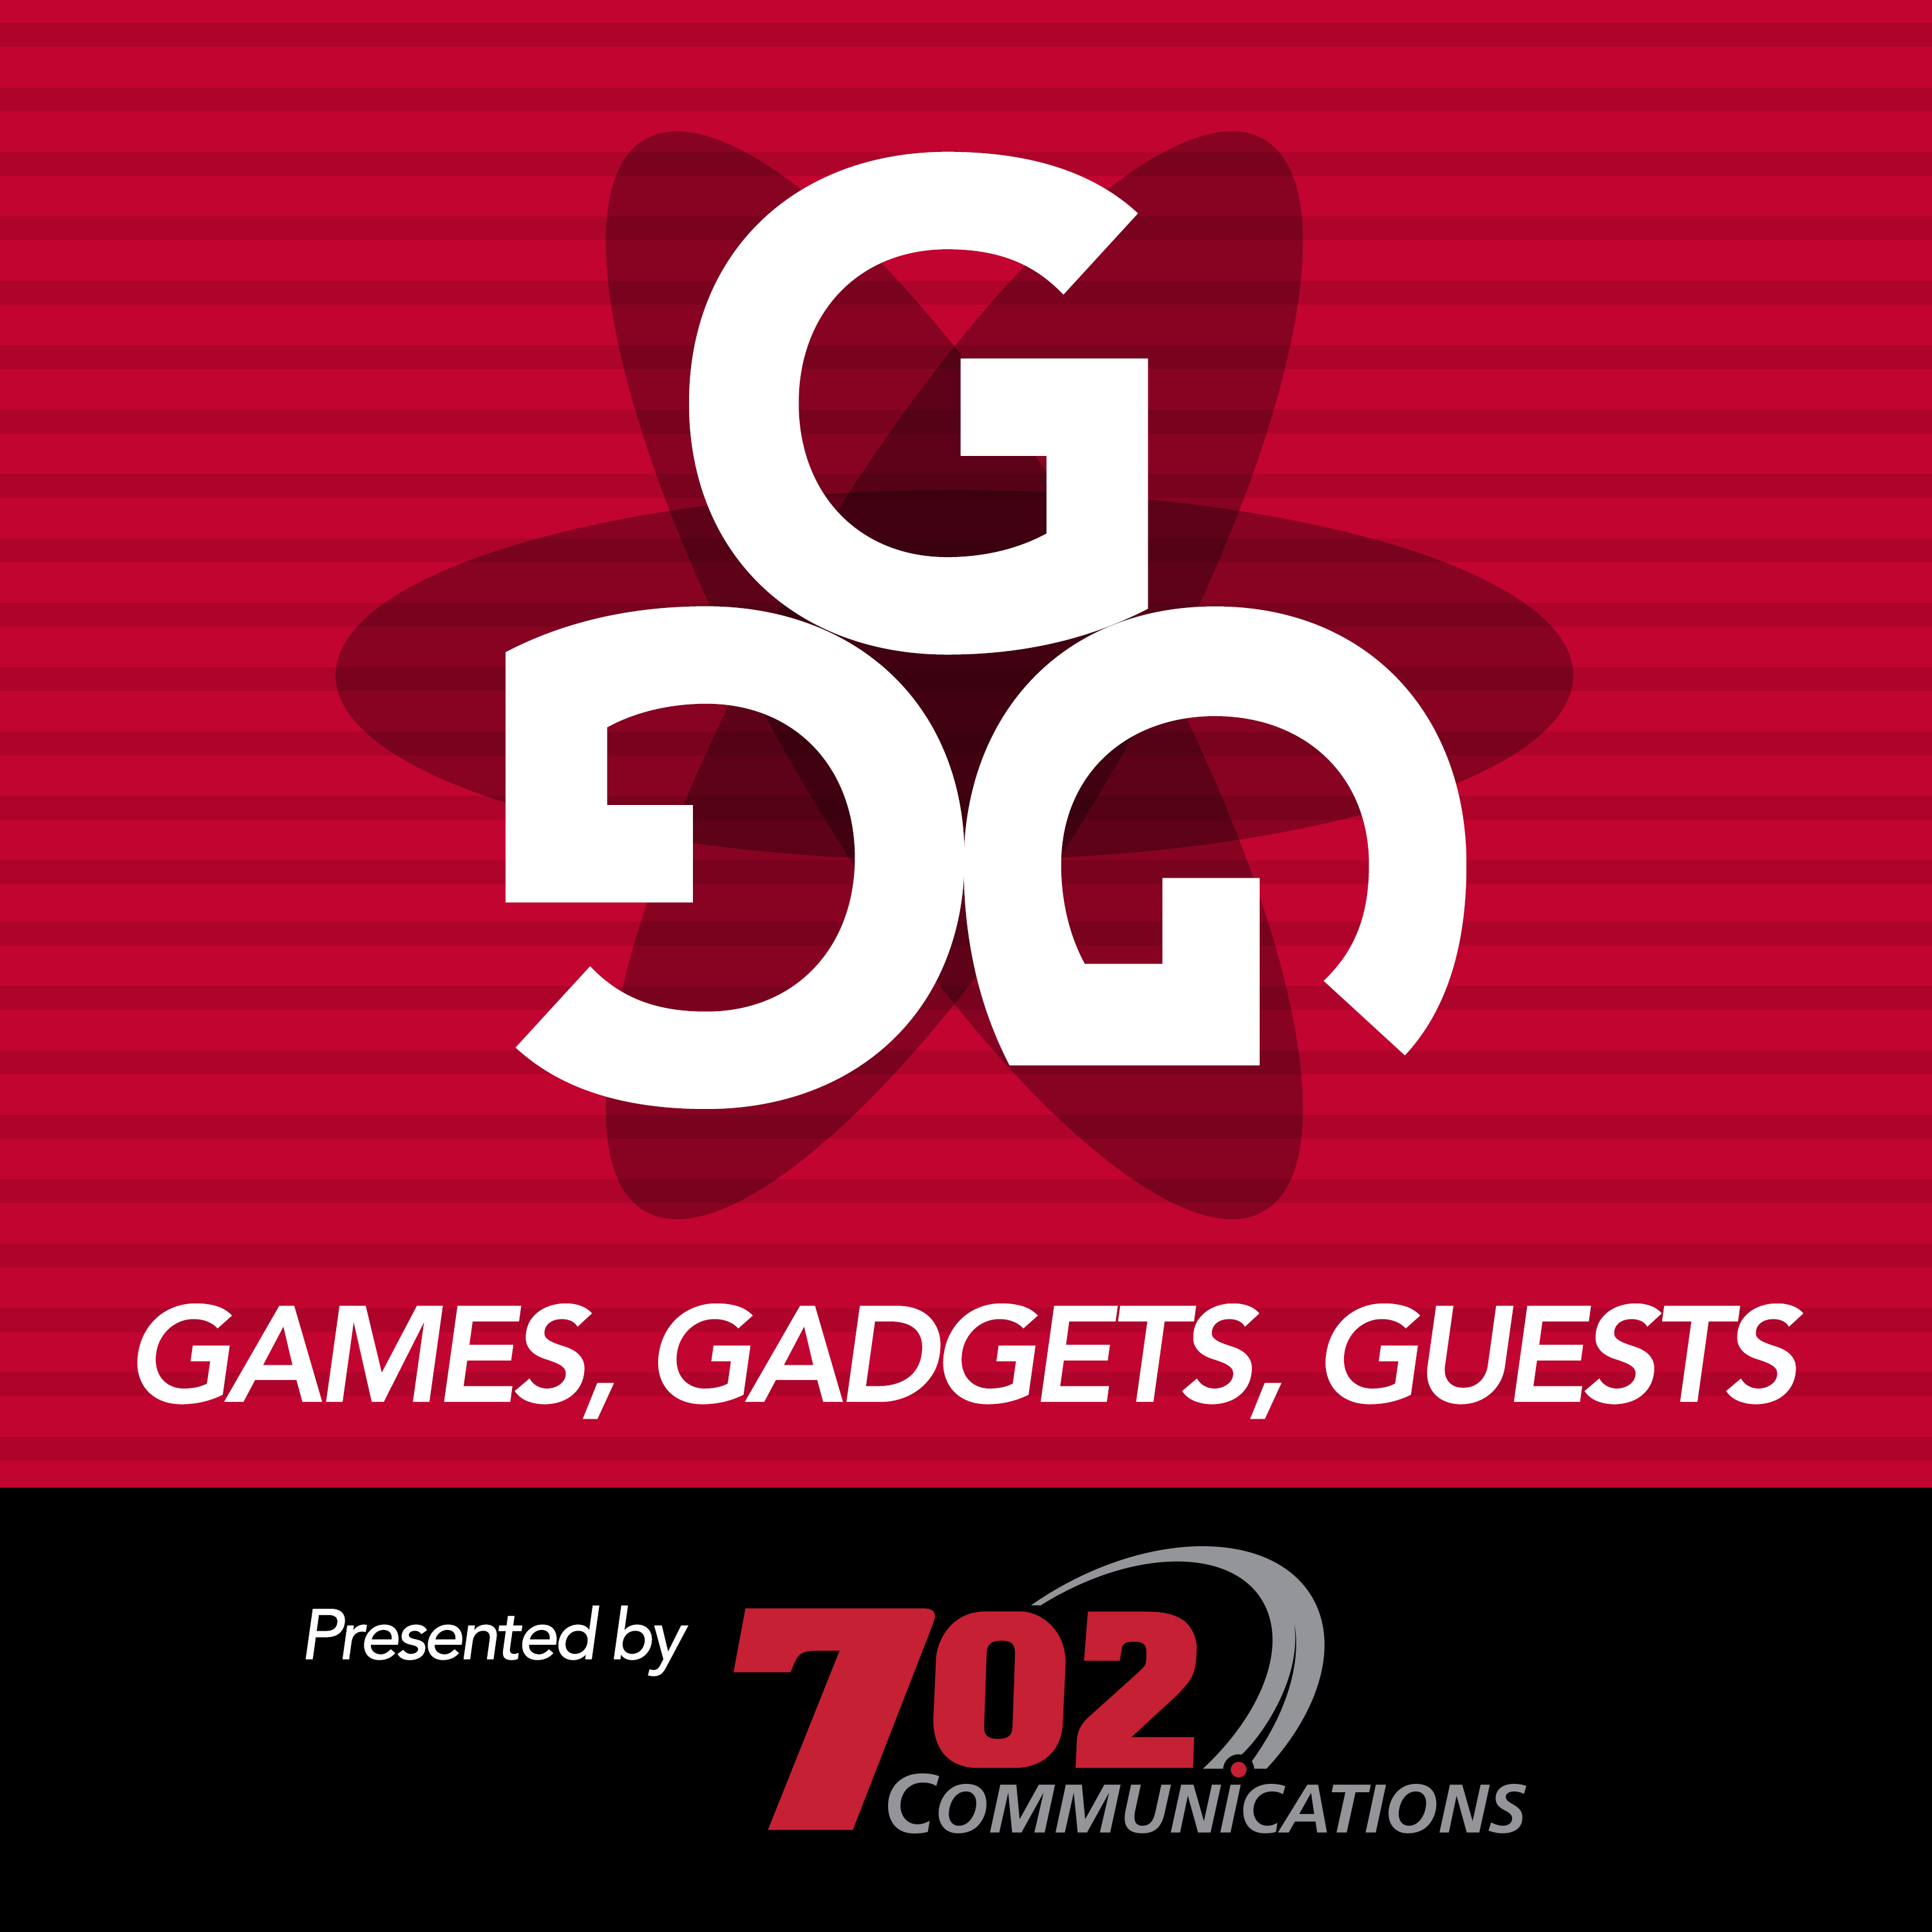 Games, Gadgets, Guests (G3)